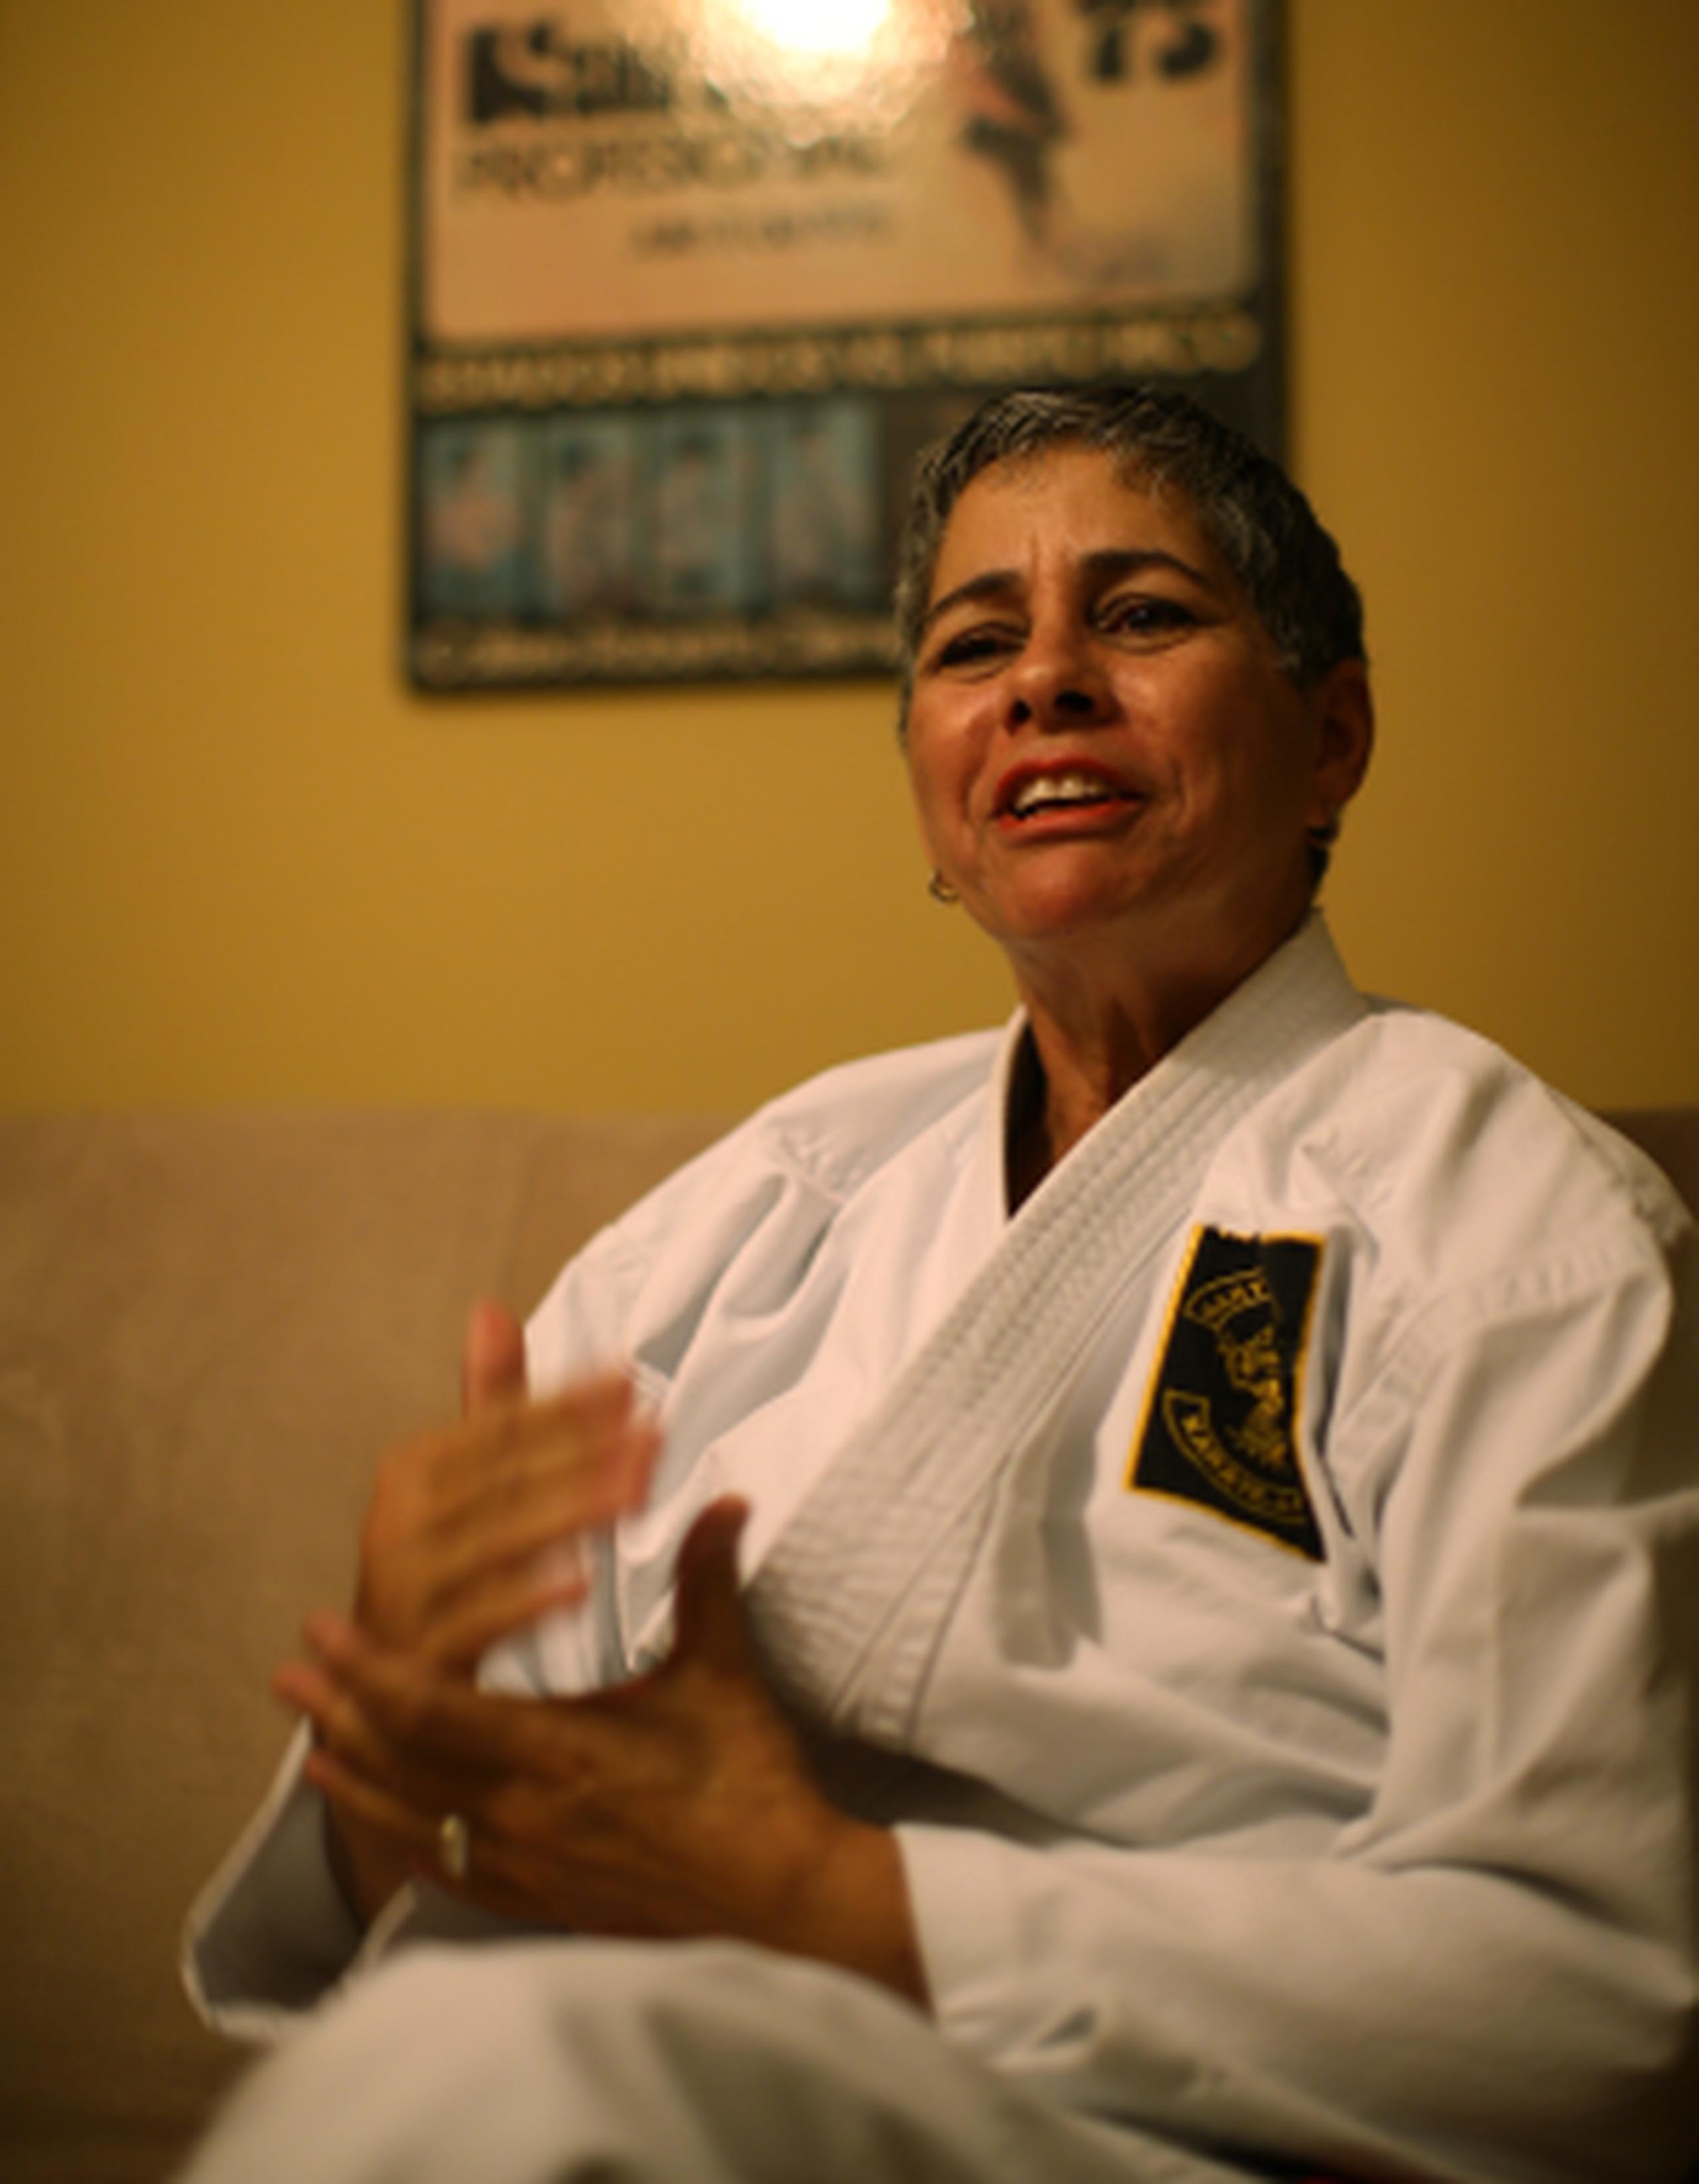 Según Rodríguez, su afán por el karate nació en su adolescencia producto de la necesidad de defenderse ella como mujer o ayudar a otros. (jose.candelaria@gfrmedia.com)